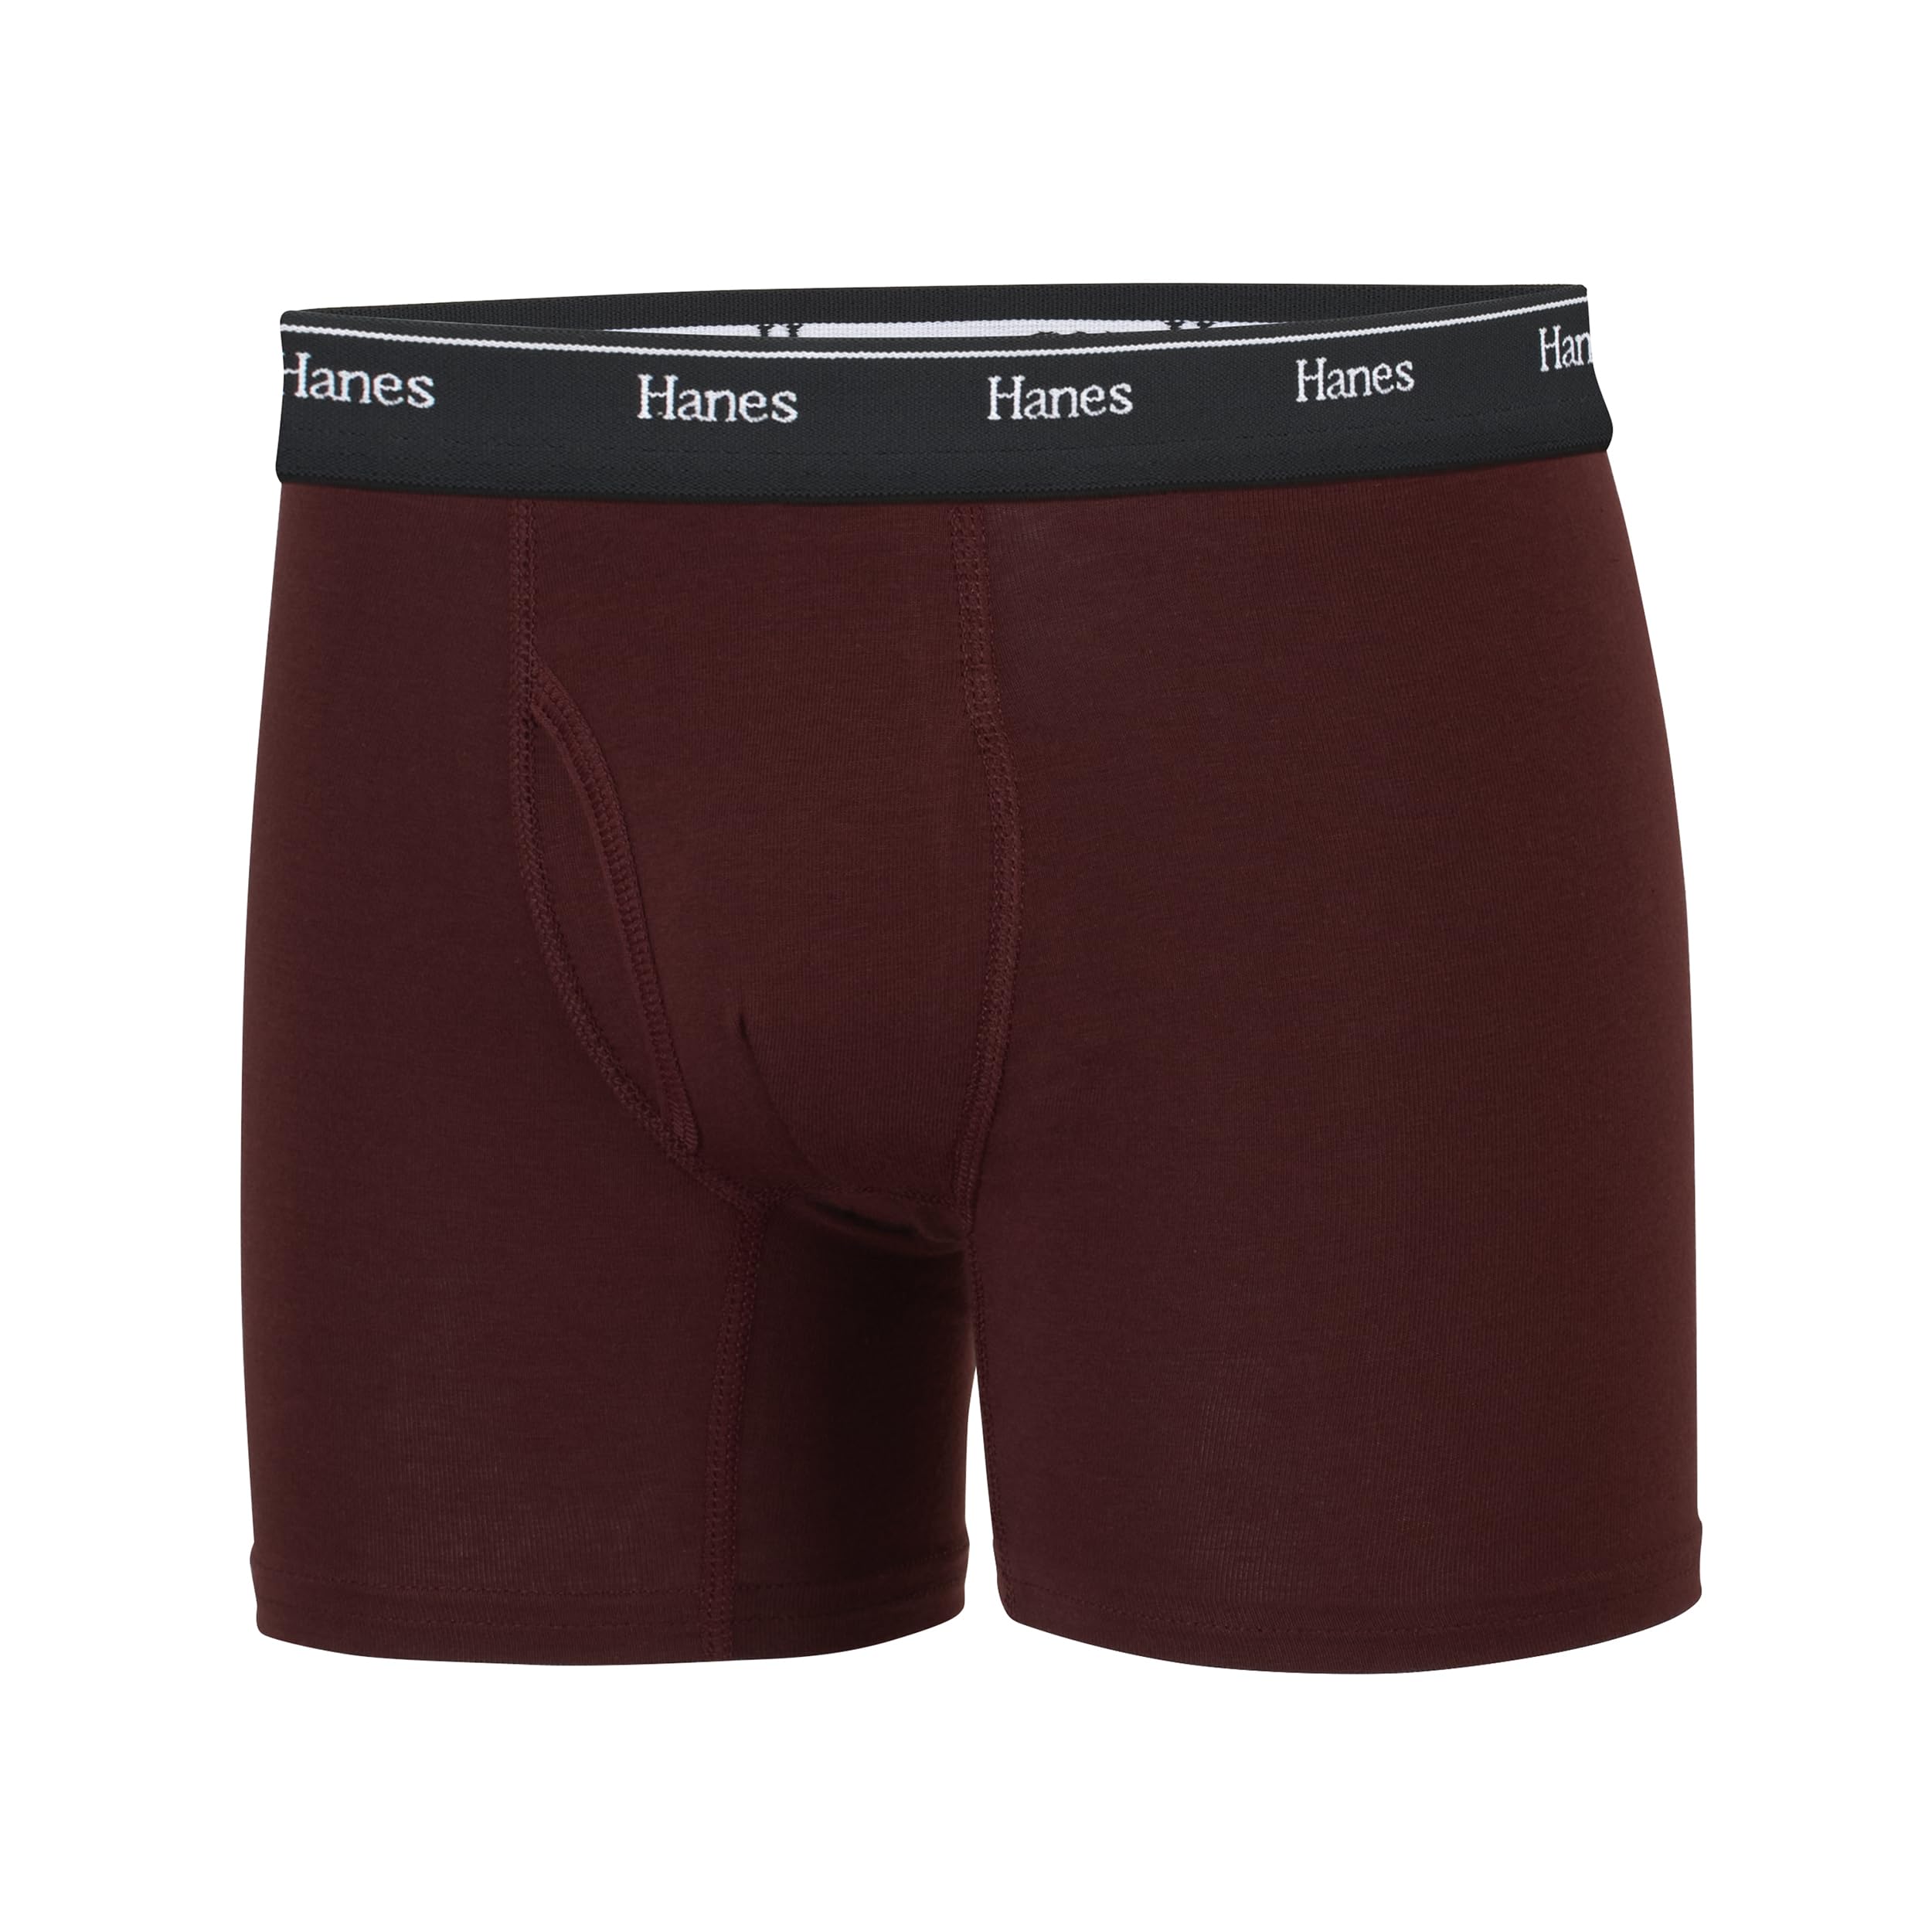 Hanes boys Originals Boxer Briefs, Tween Boy Underwear, Cotton Stretch, 6-pack